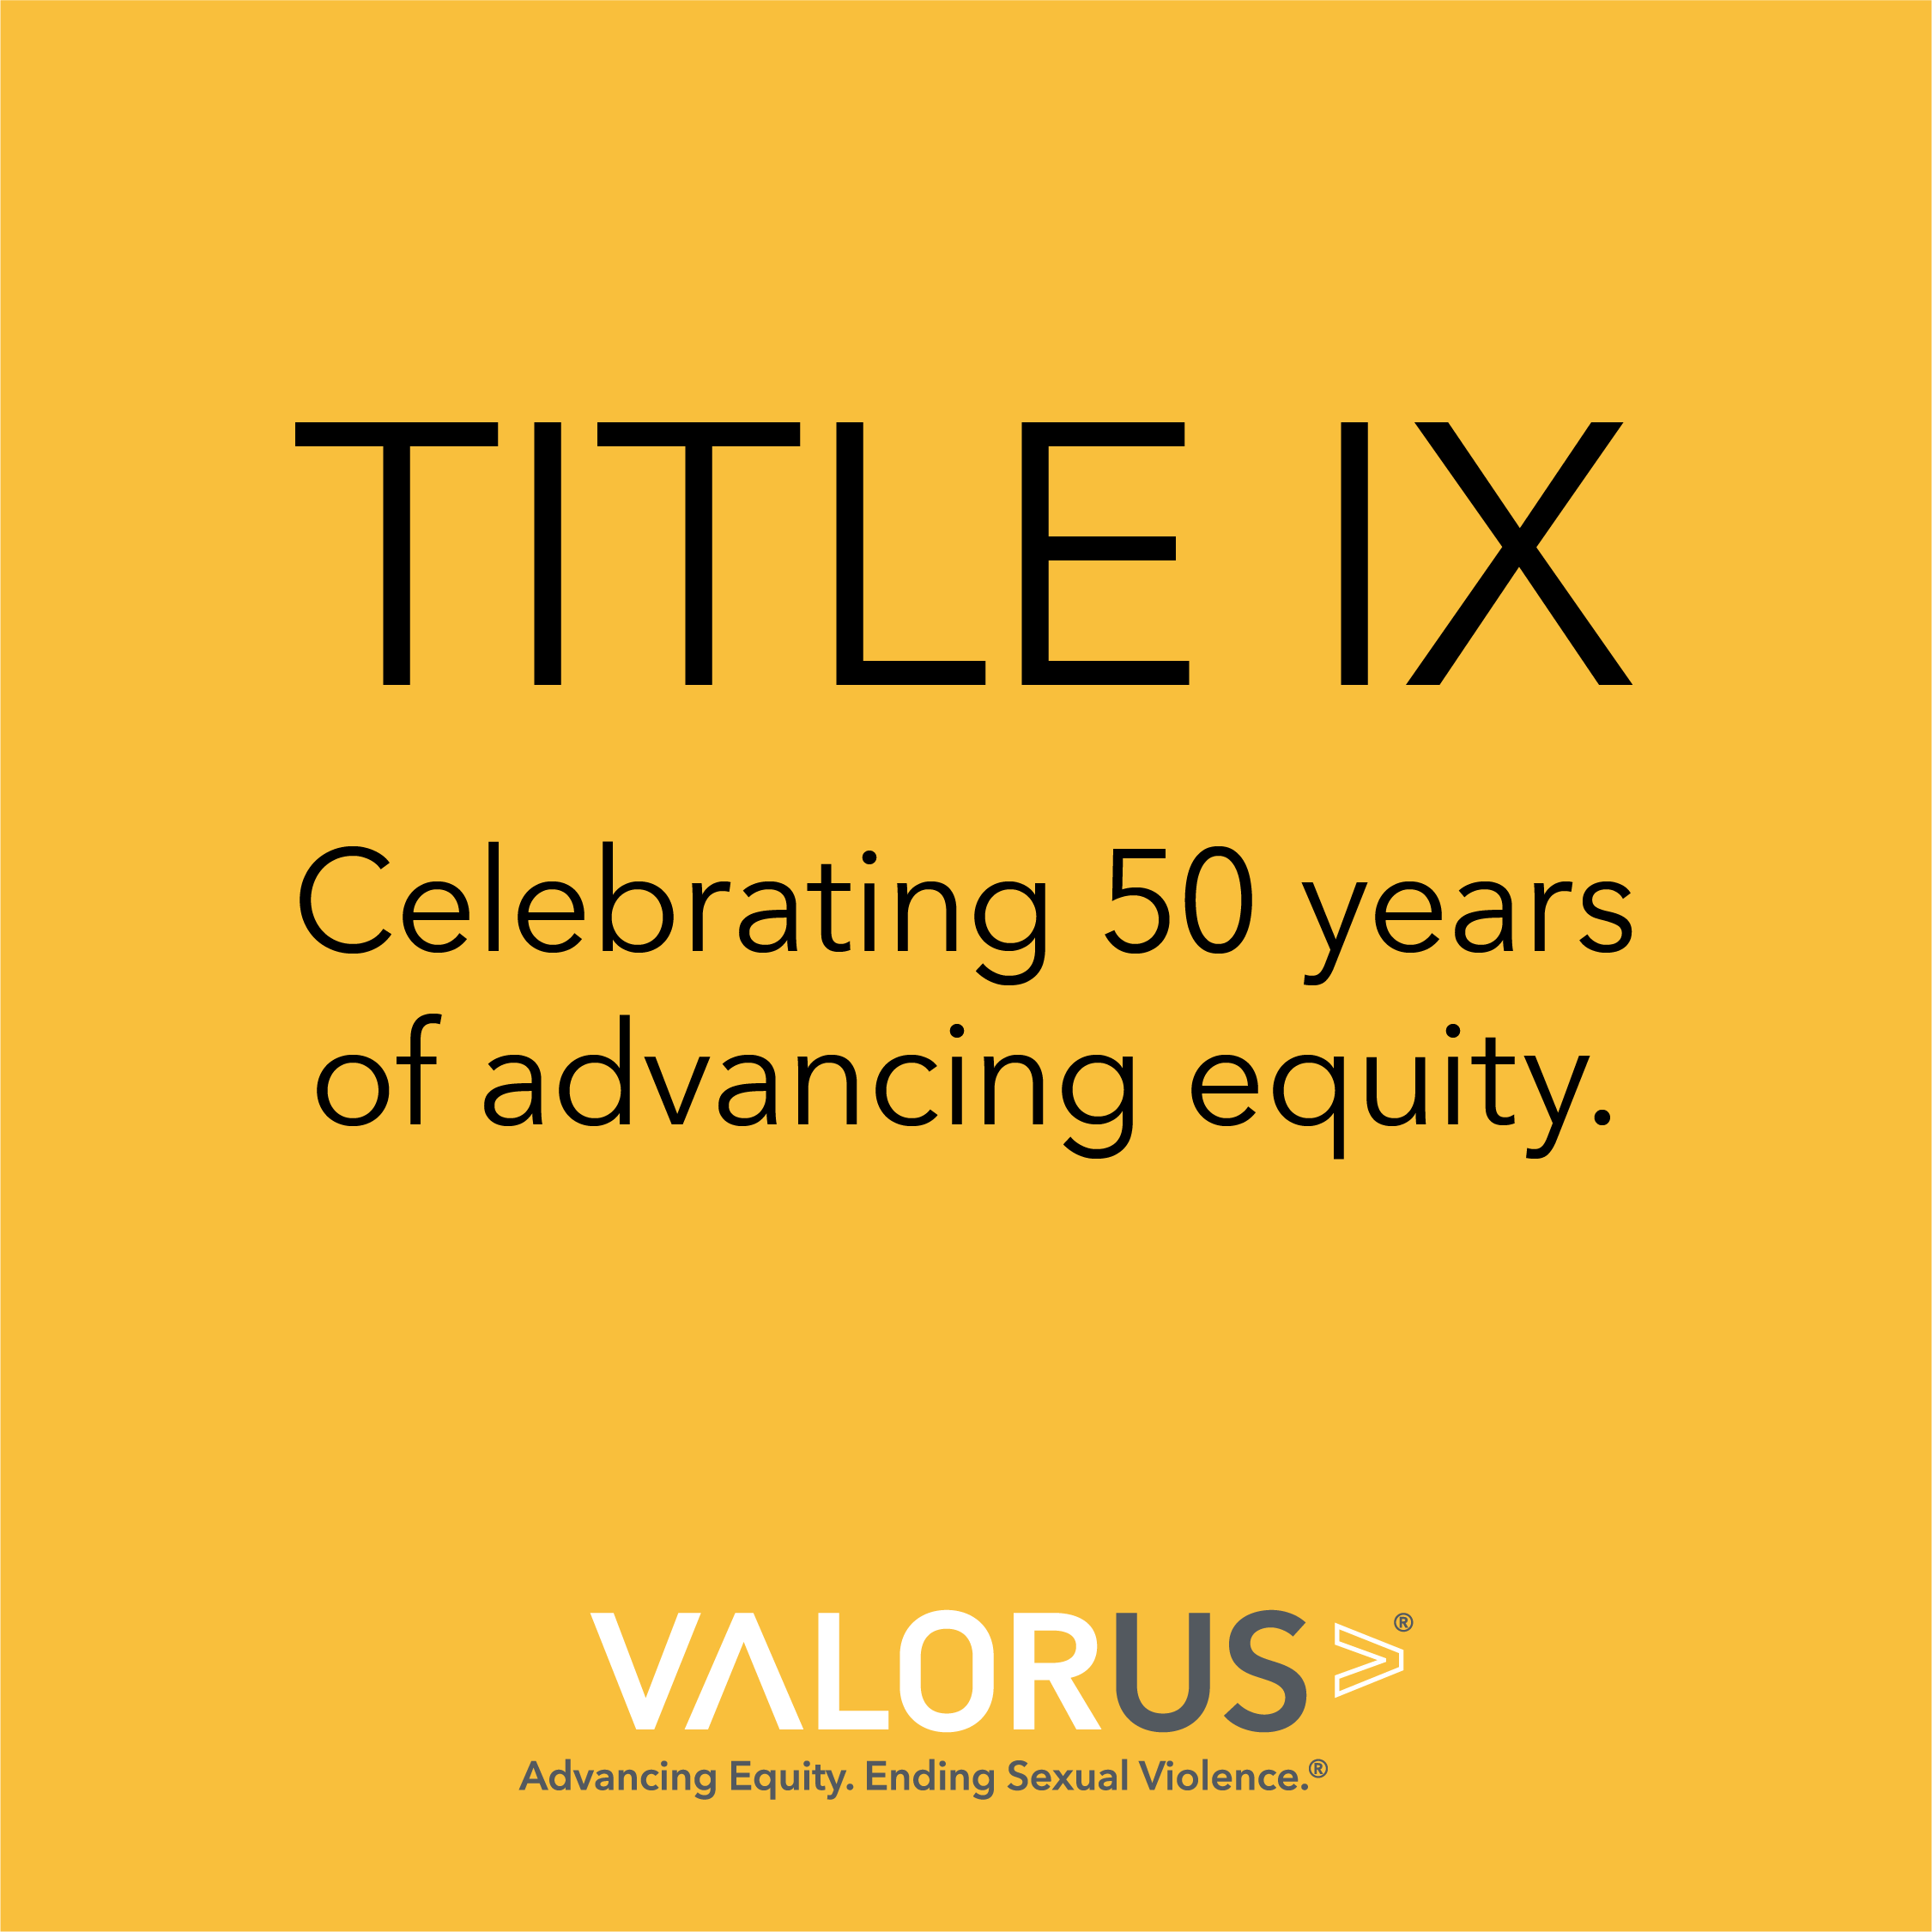 Título IX Celebración de 50 años de avance patrimonial. Logotipo de ValorUS